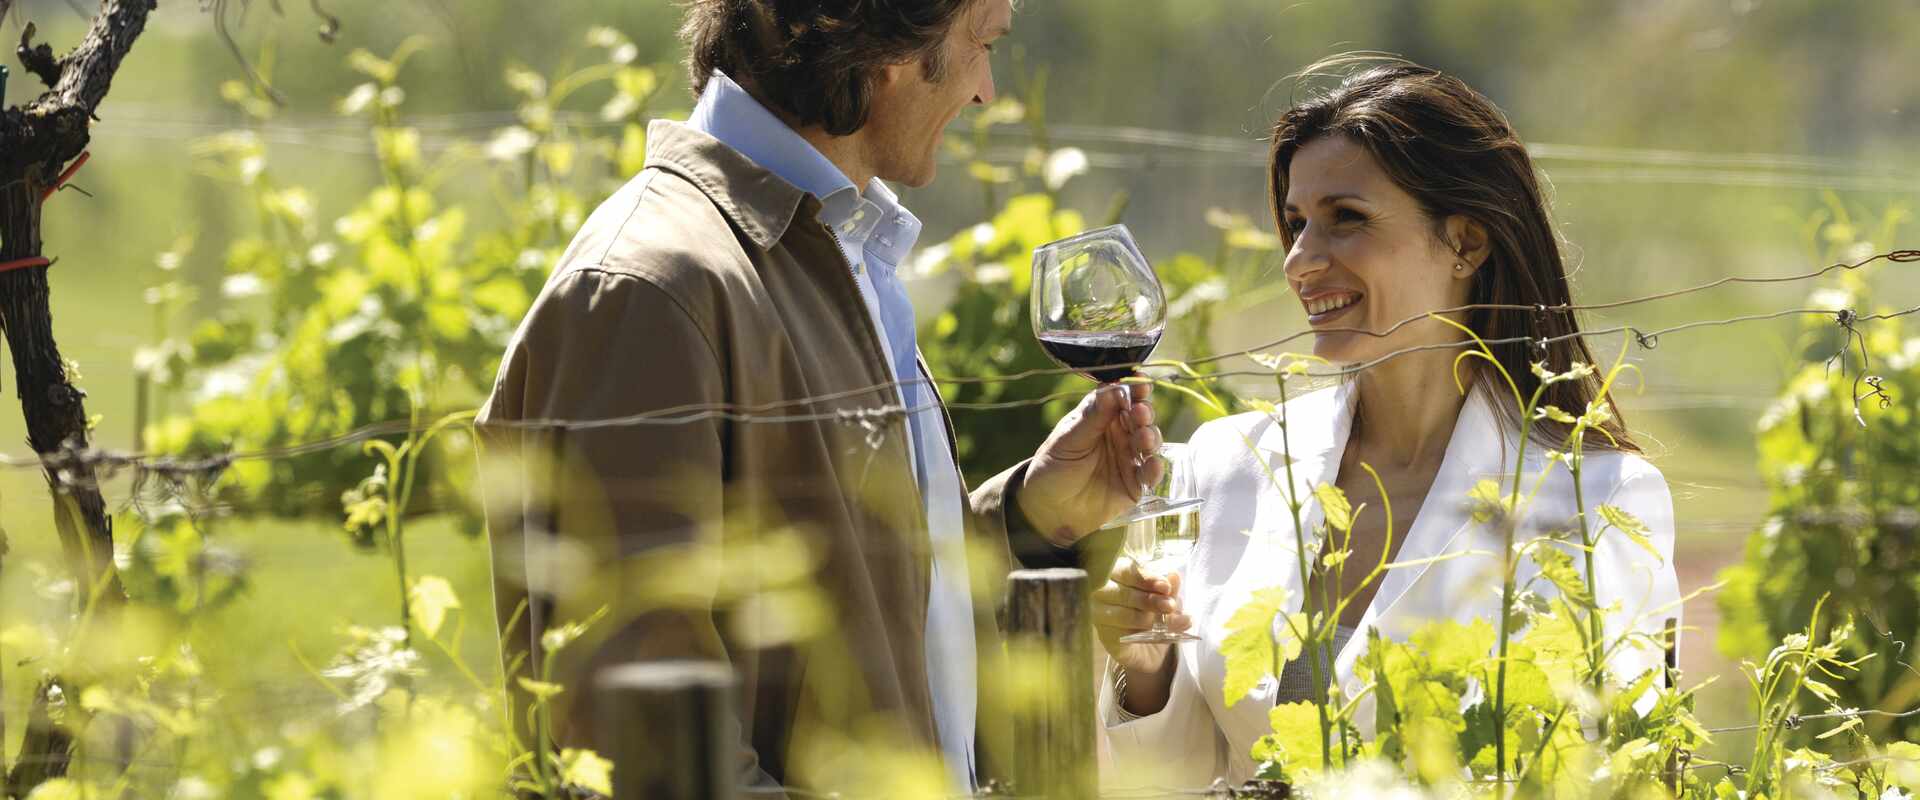 generic couple wine tasting in vineyard, tasmania